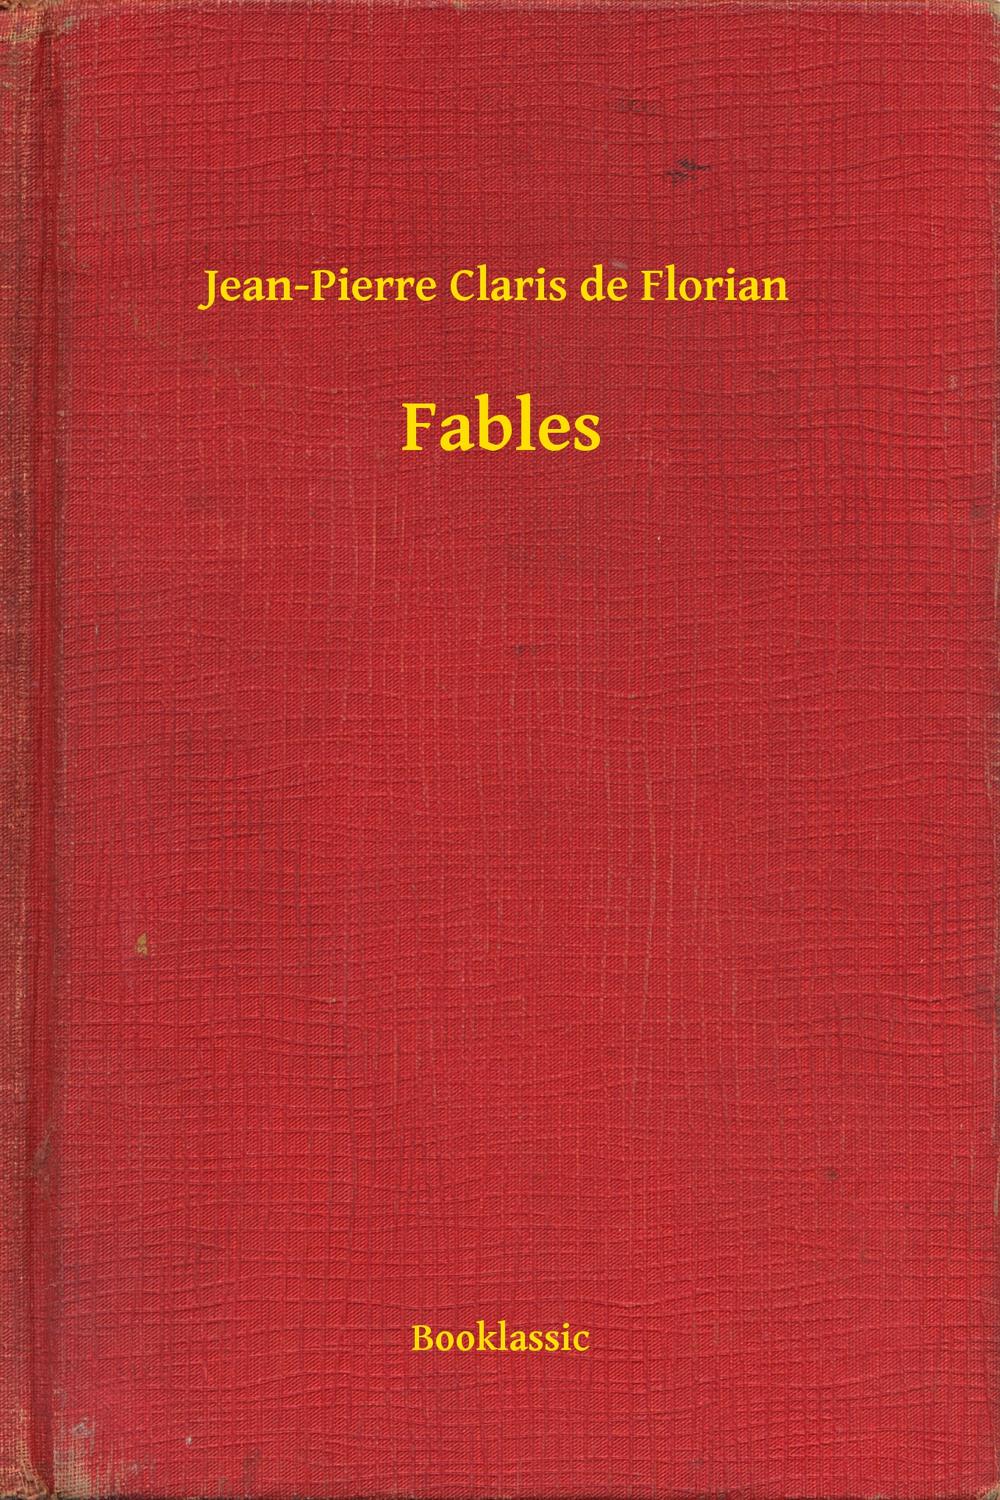 Fables - Jean-Pierre Claris de Florian,,